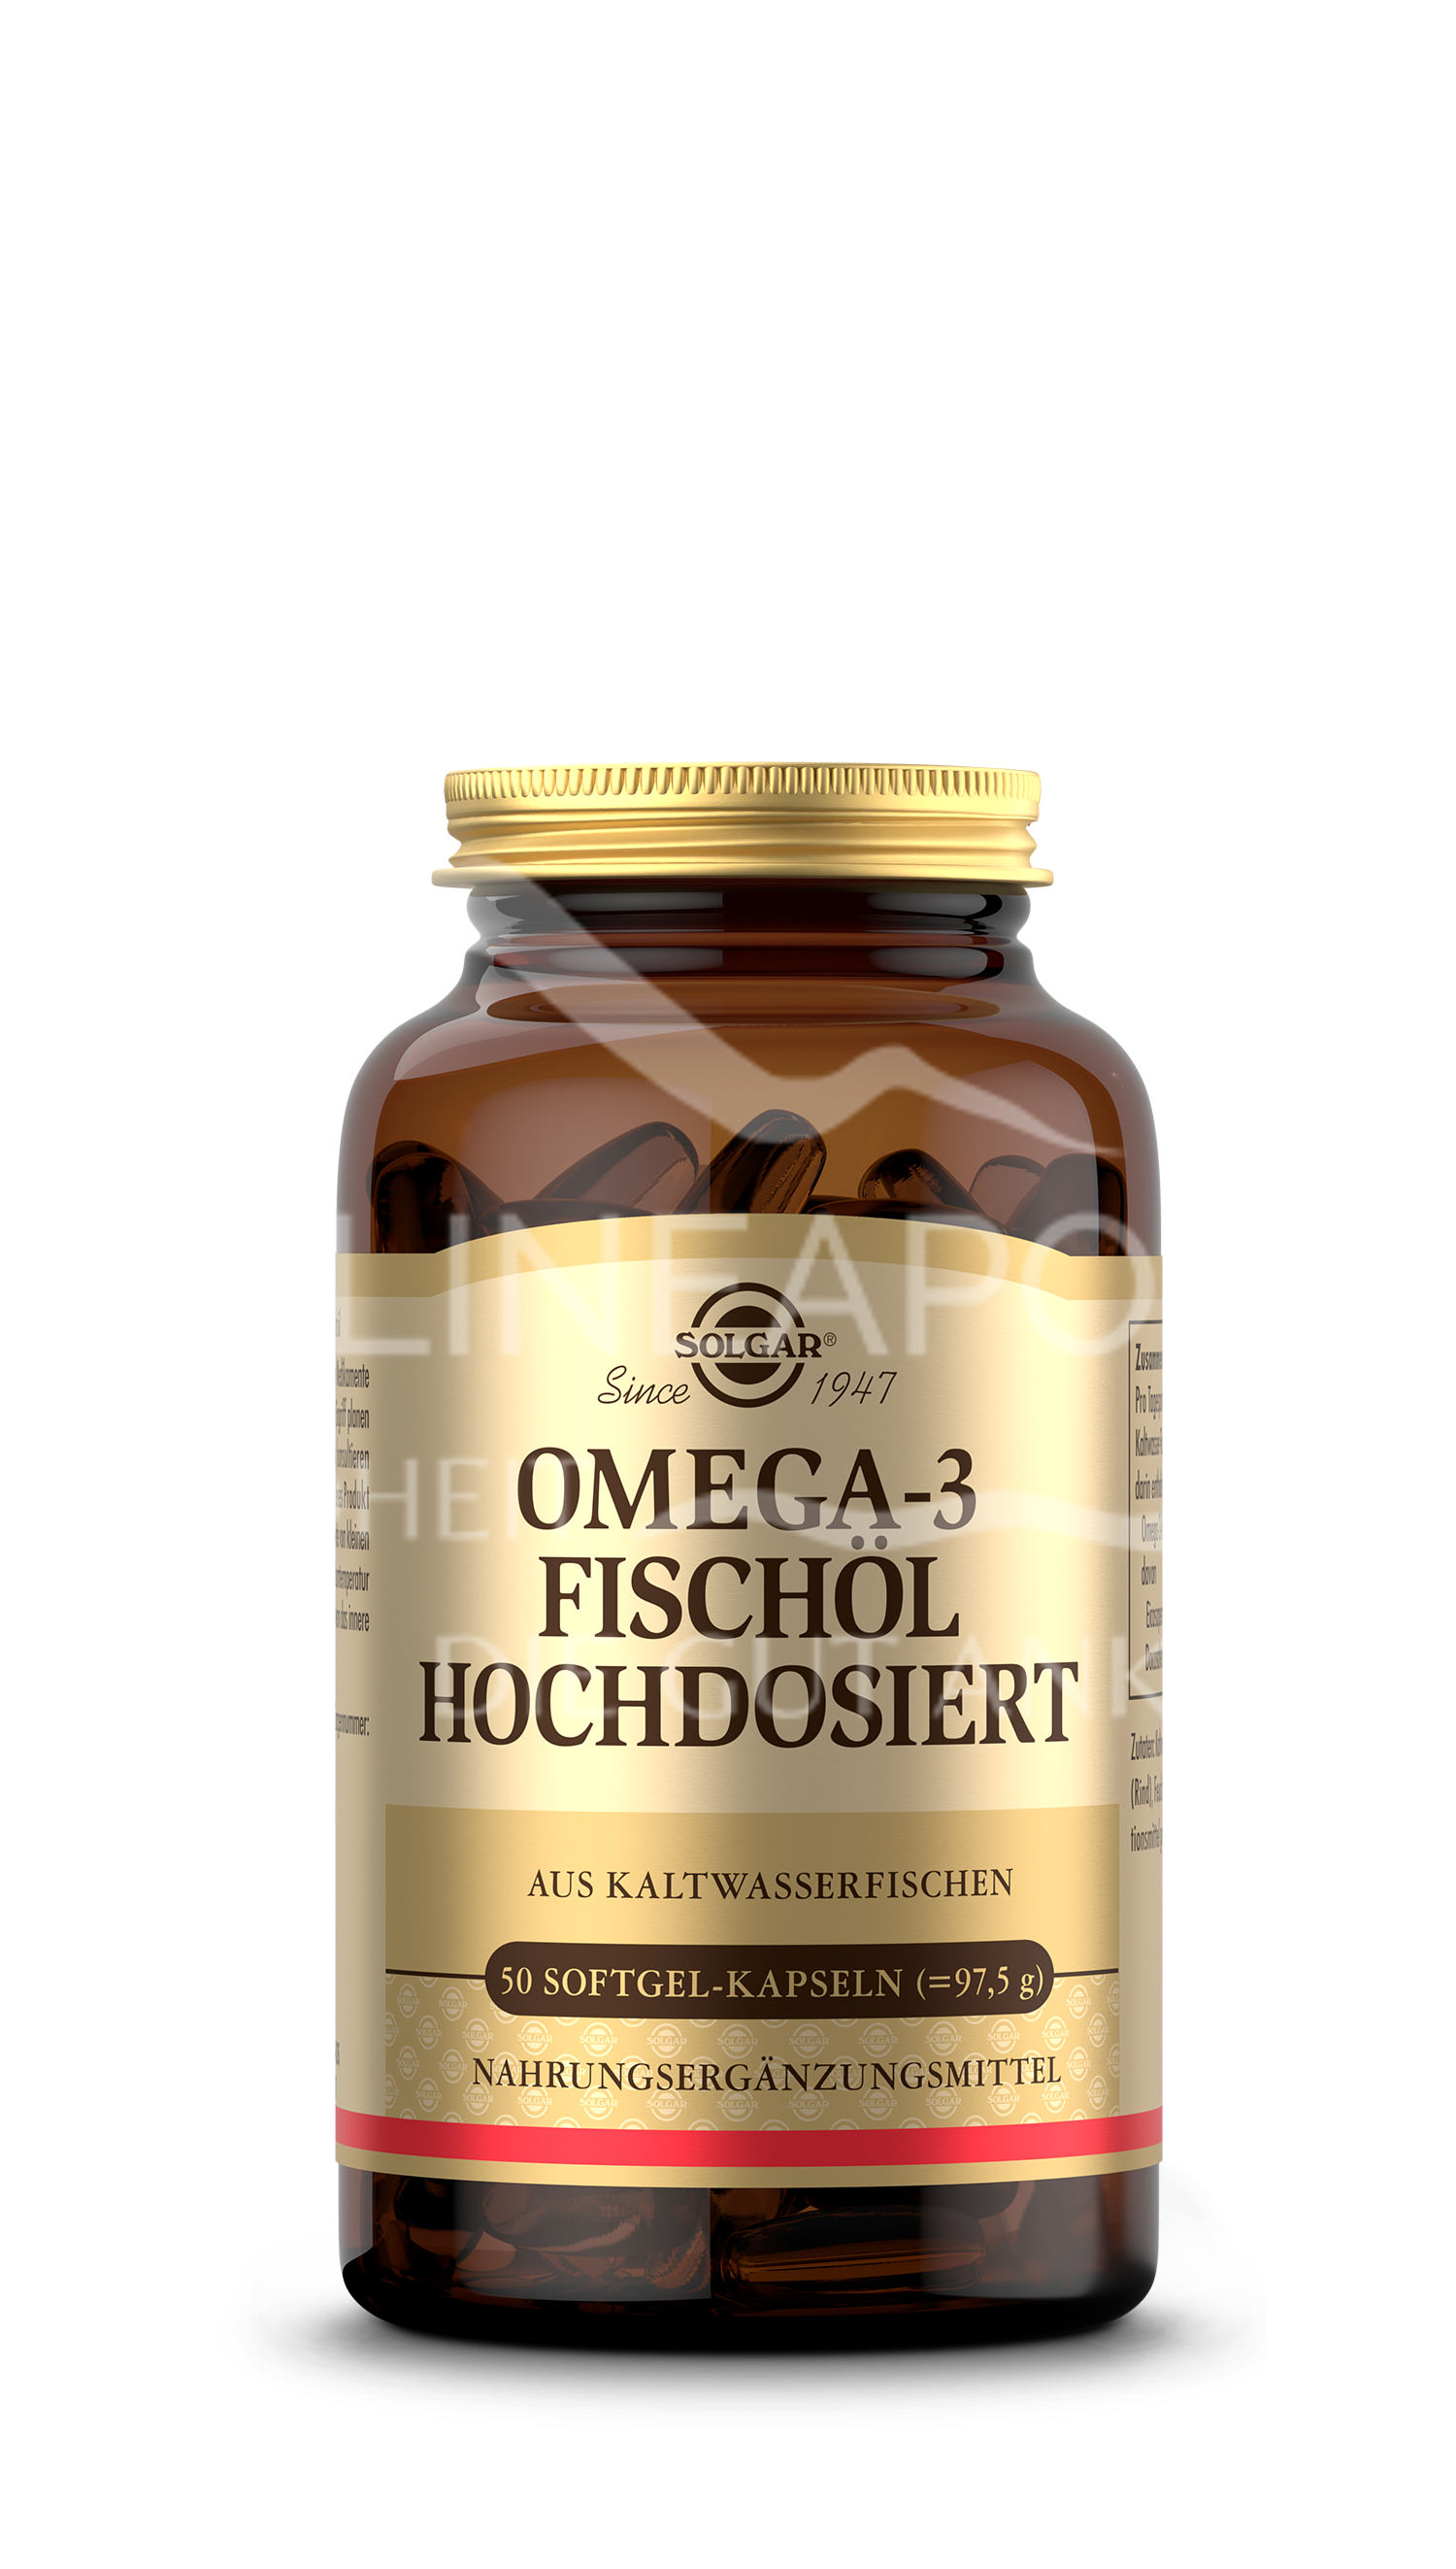 Solgar® Omega-3 Fischöl hochdosiert Softgel-Kapseln